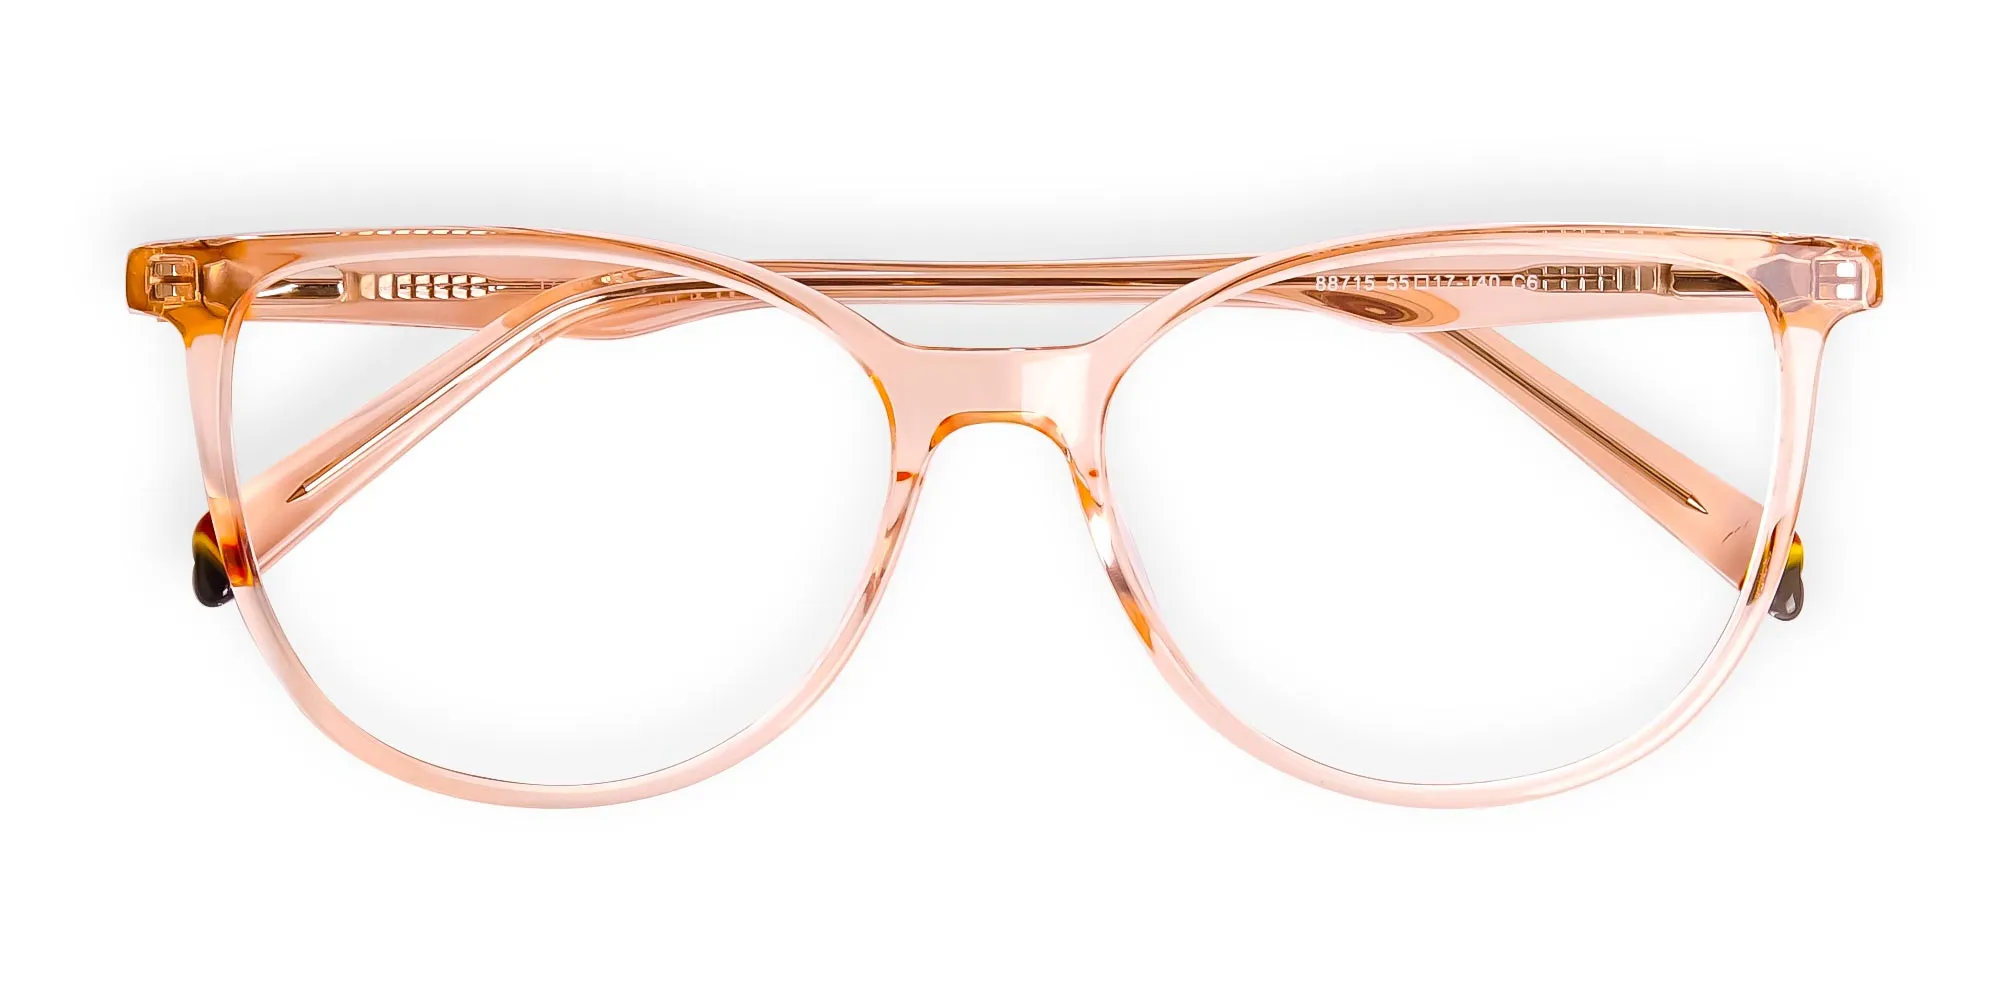 Orange-Colour-Crystal-Clear-or-Transparent-Cat-eye-Glasses-Frames-2